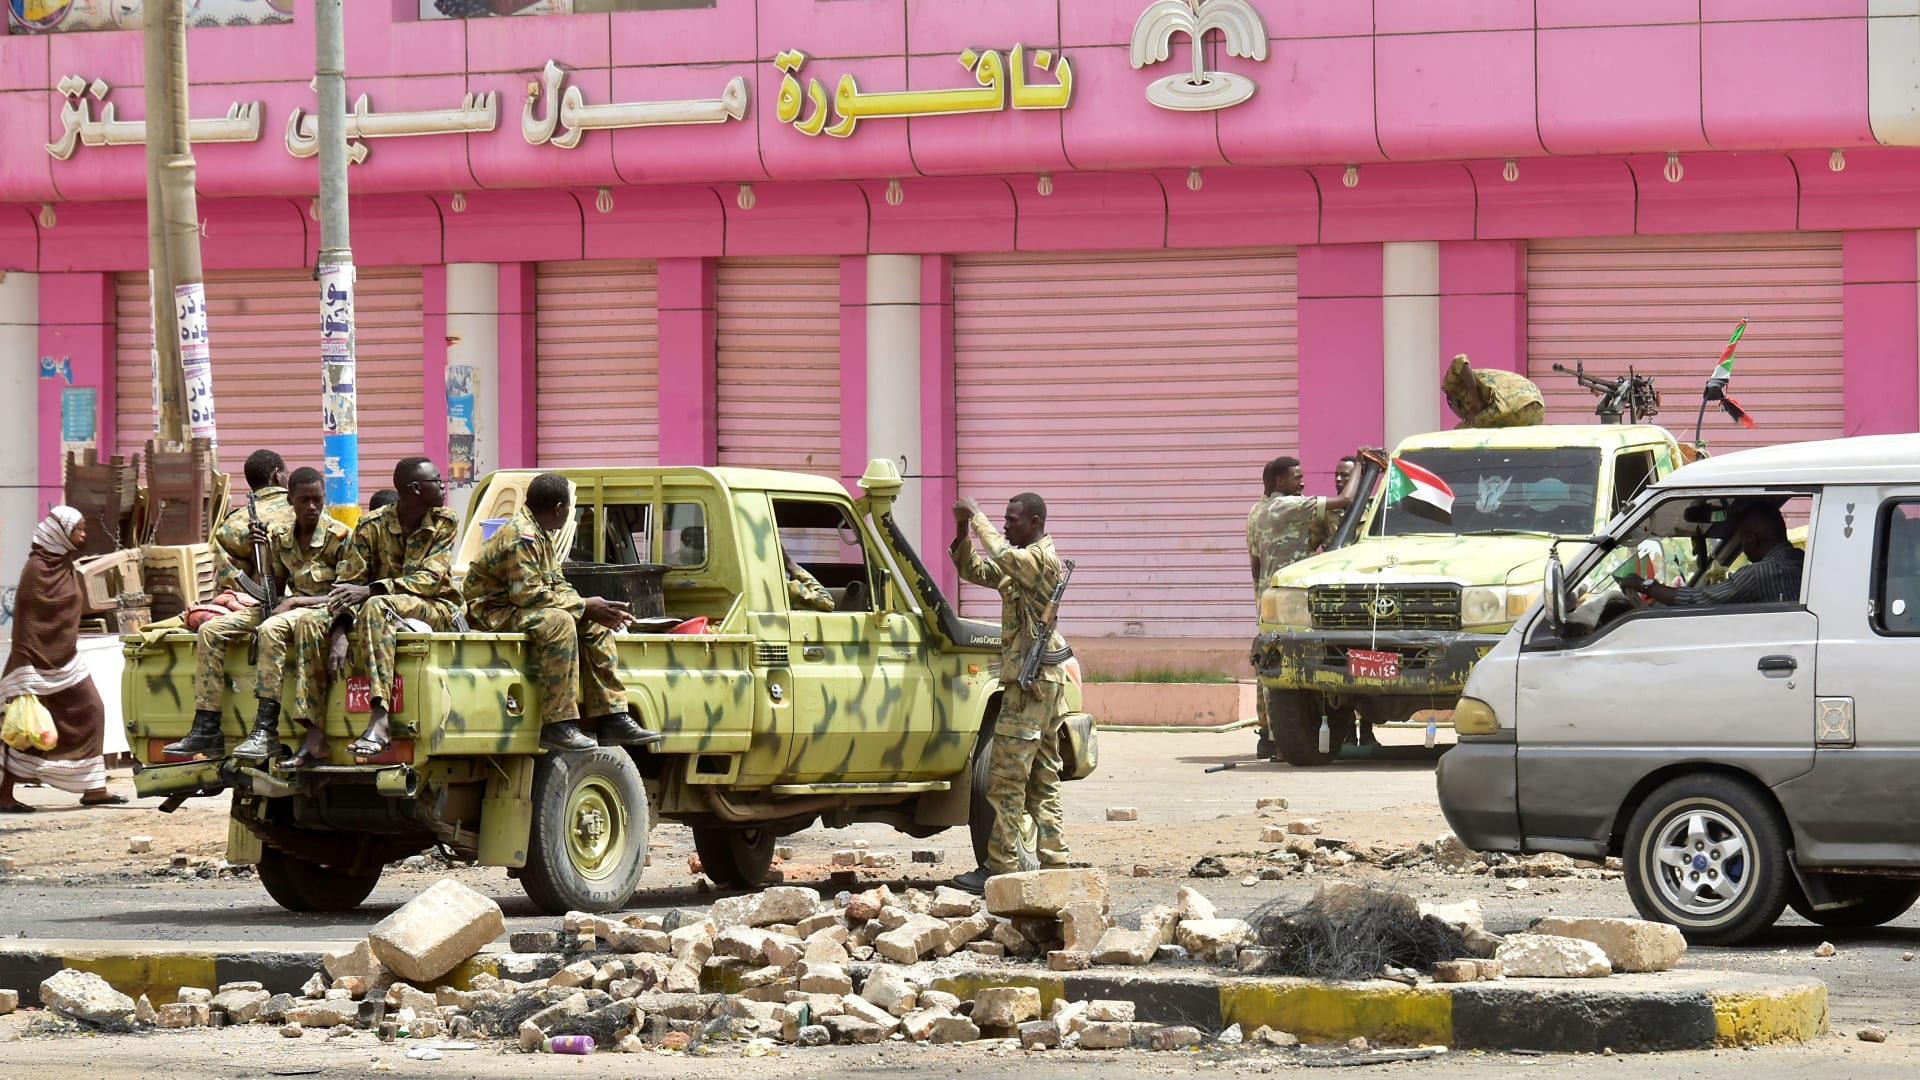 العصيان المدني في السودان.. والهدف: "الإطاحة بالمجلس العسكري"